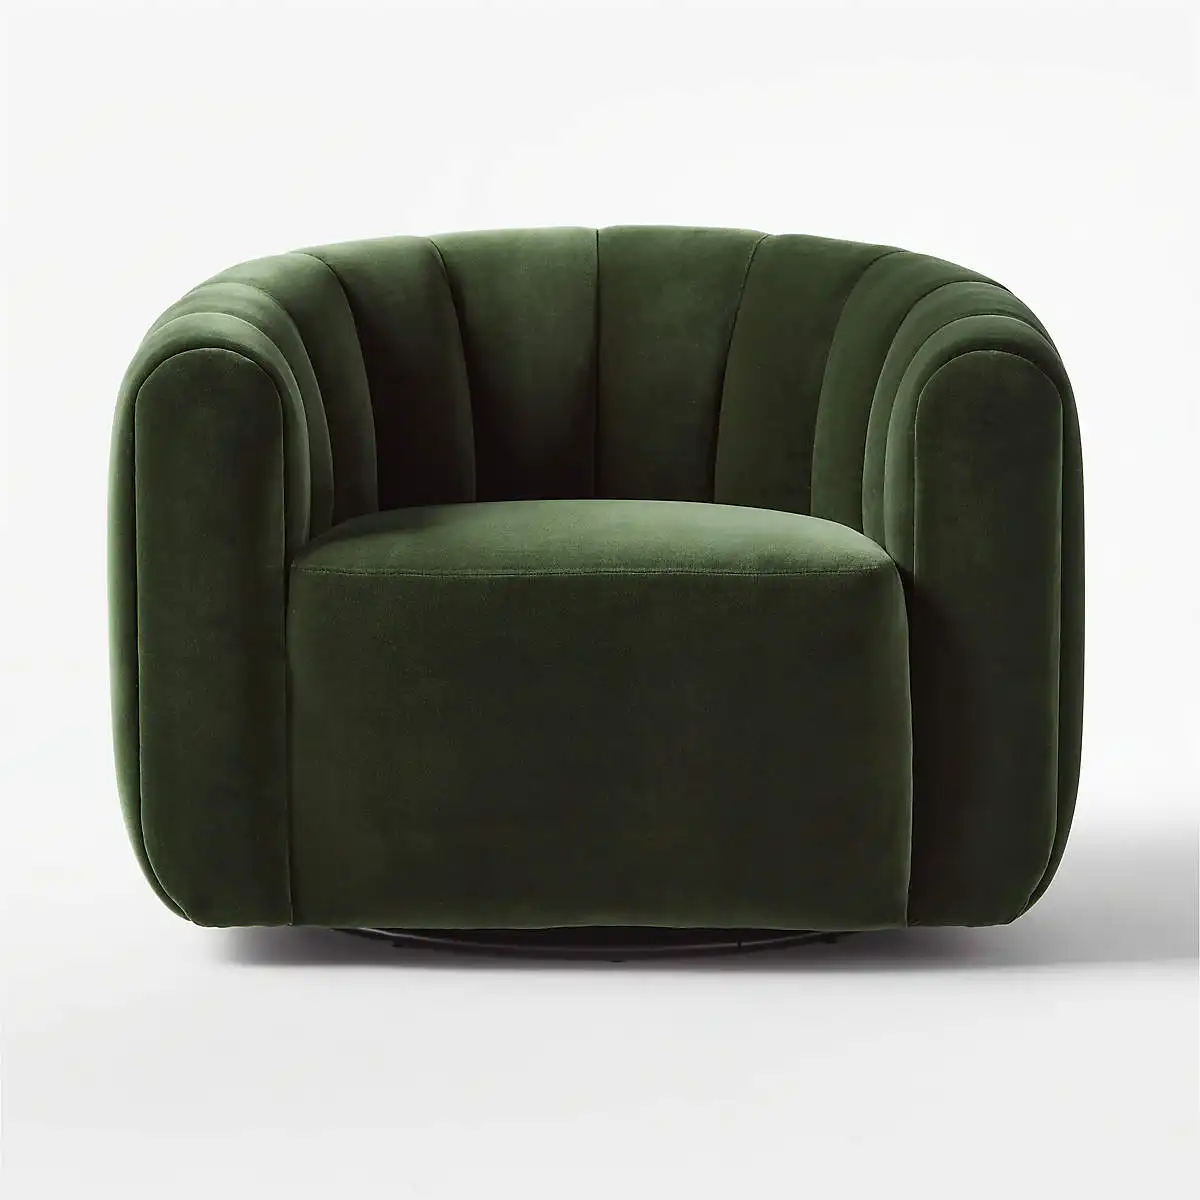 Silla giratoria de terciopelo verde, sillón canalizado individual de lujo, para uso en sala de estar y Hotel